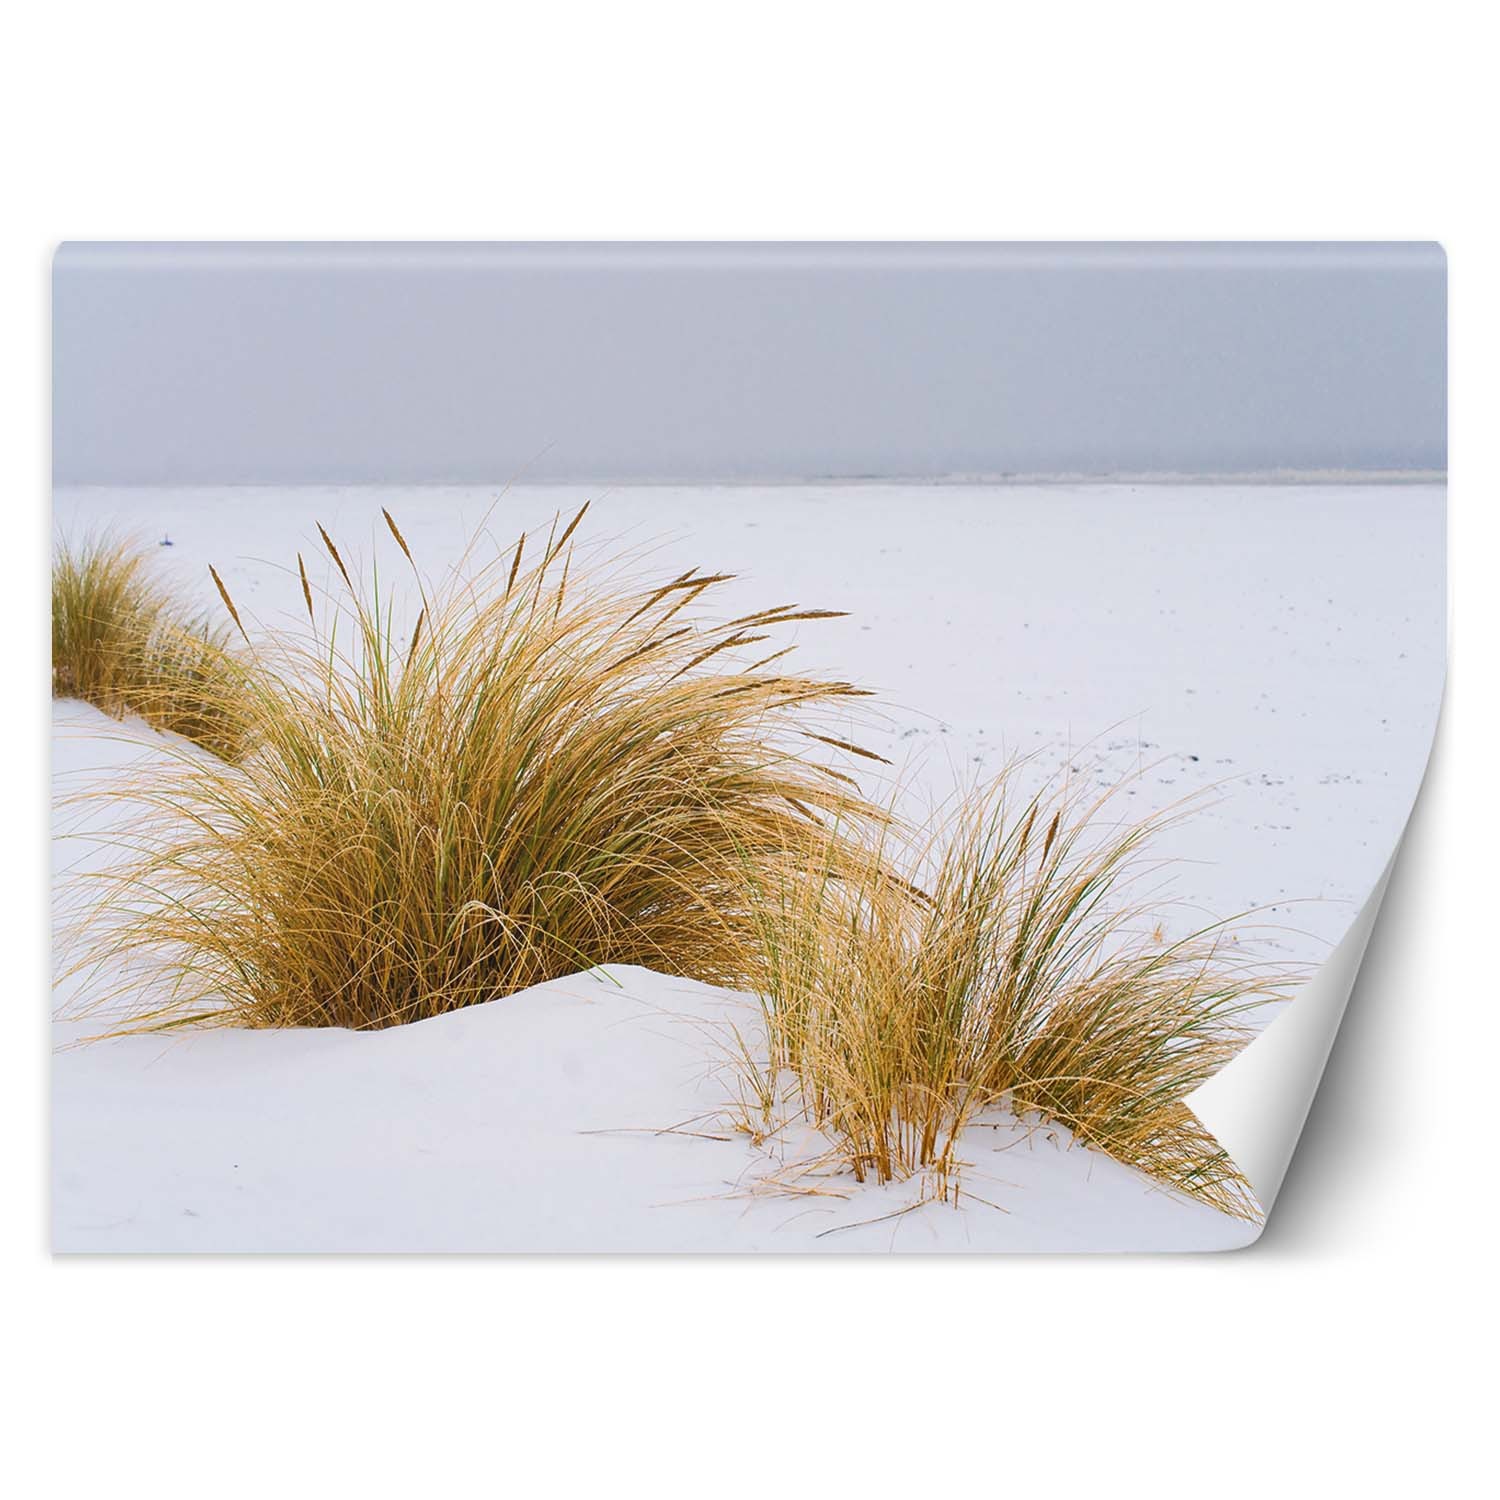 Trend24 – Behang – Duinen Op Gouden Zand – Behangpapier – Fotobehang Natuur – Behang Woonkamer – 450x315x2 cm – Incl. behanglijm